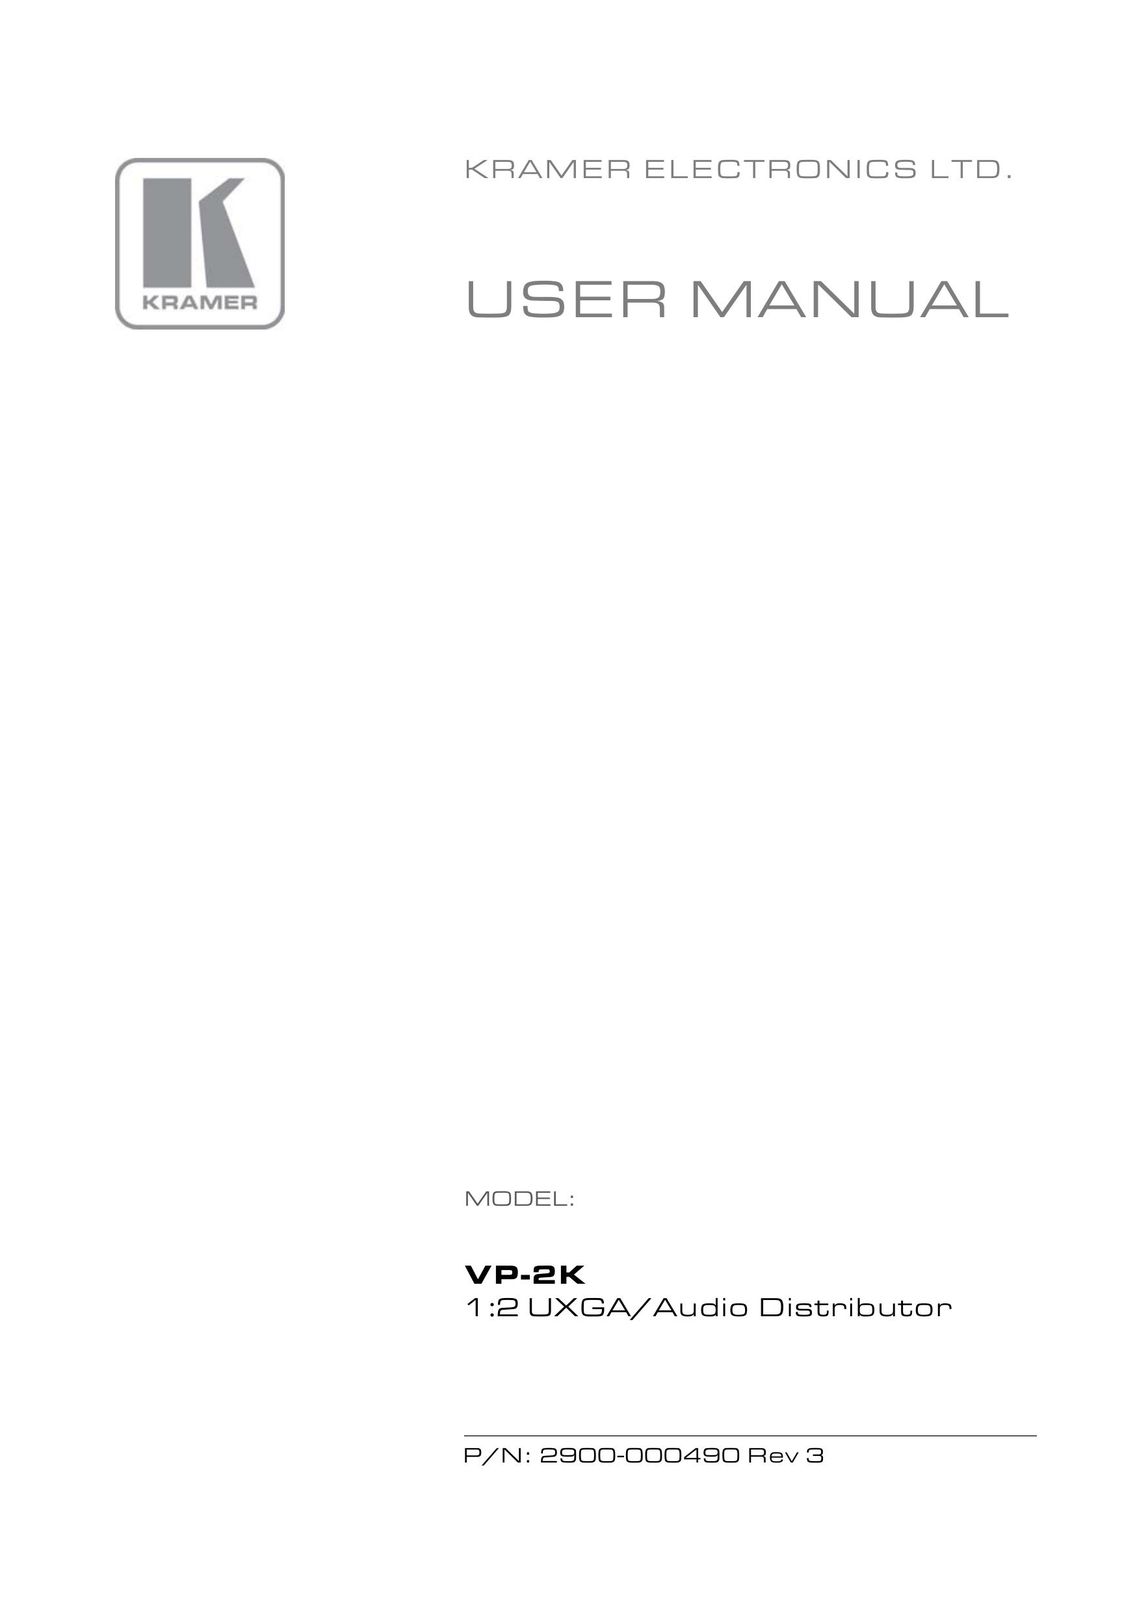 Kramer Electronics 2900-000490 Rev 3 Stereo System User Manual